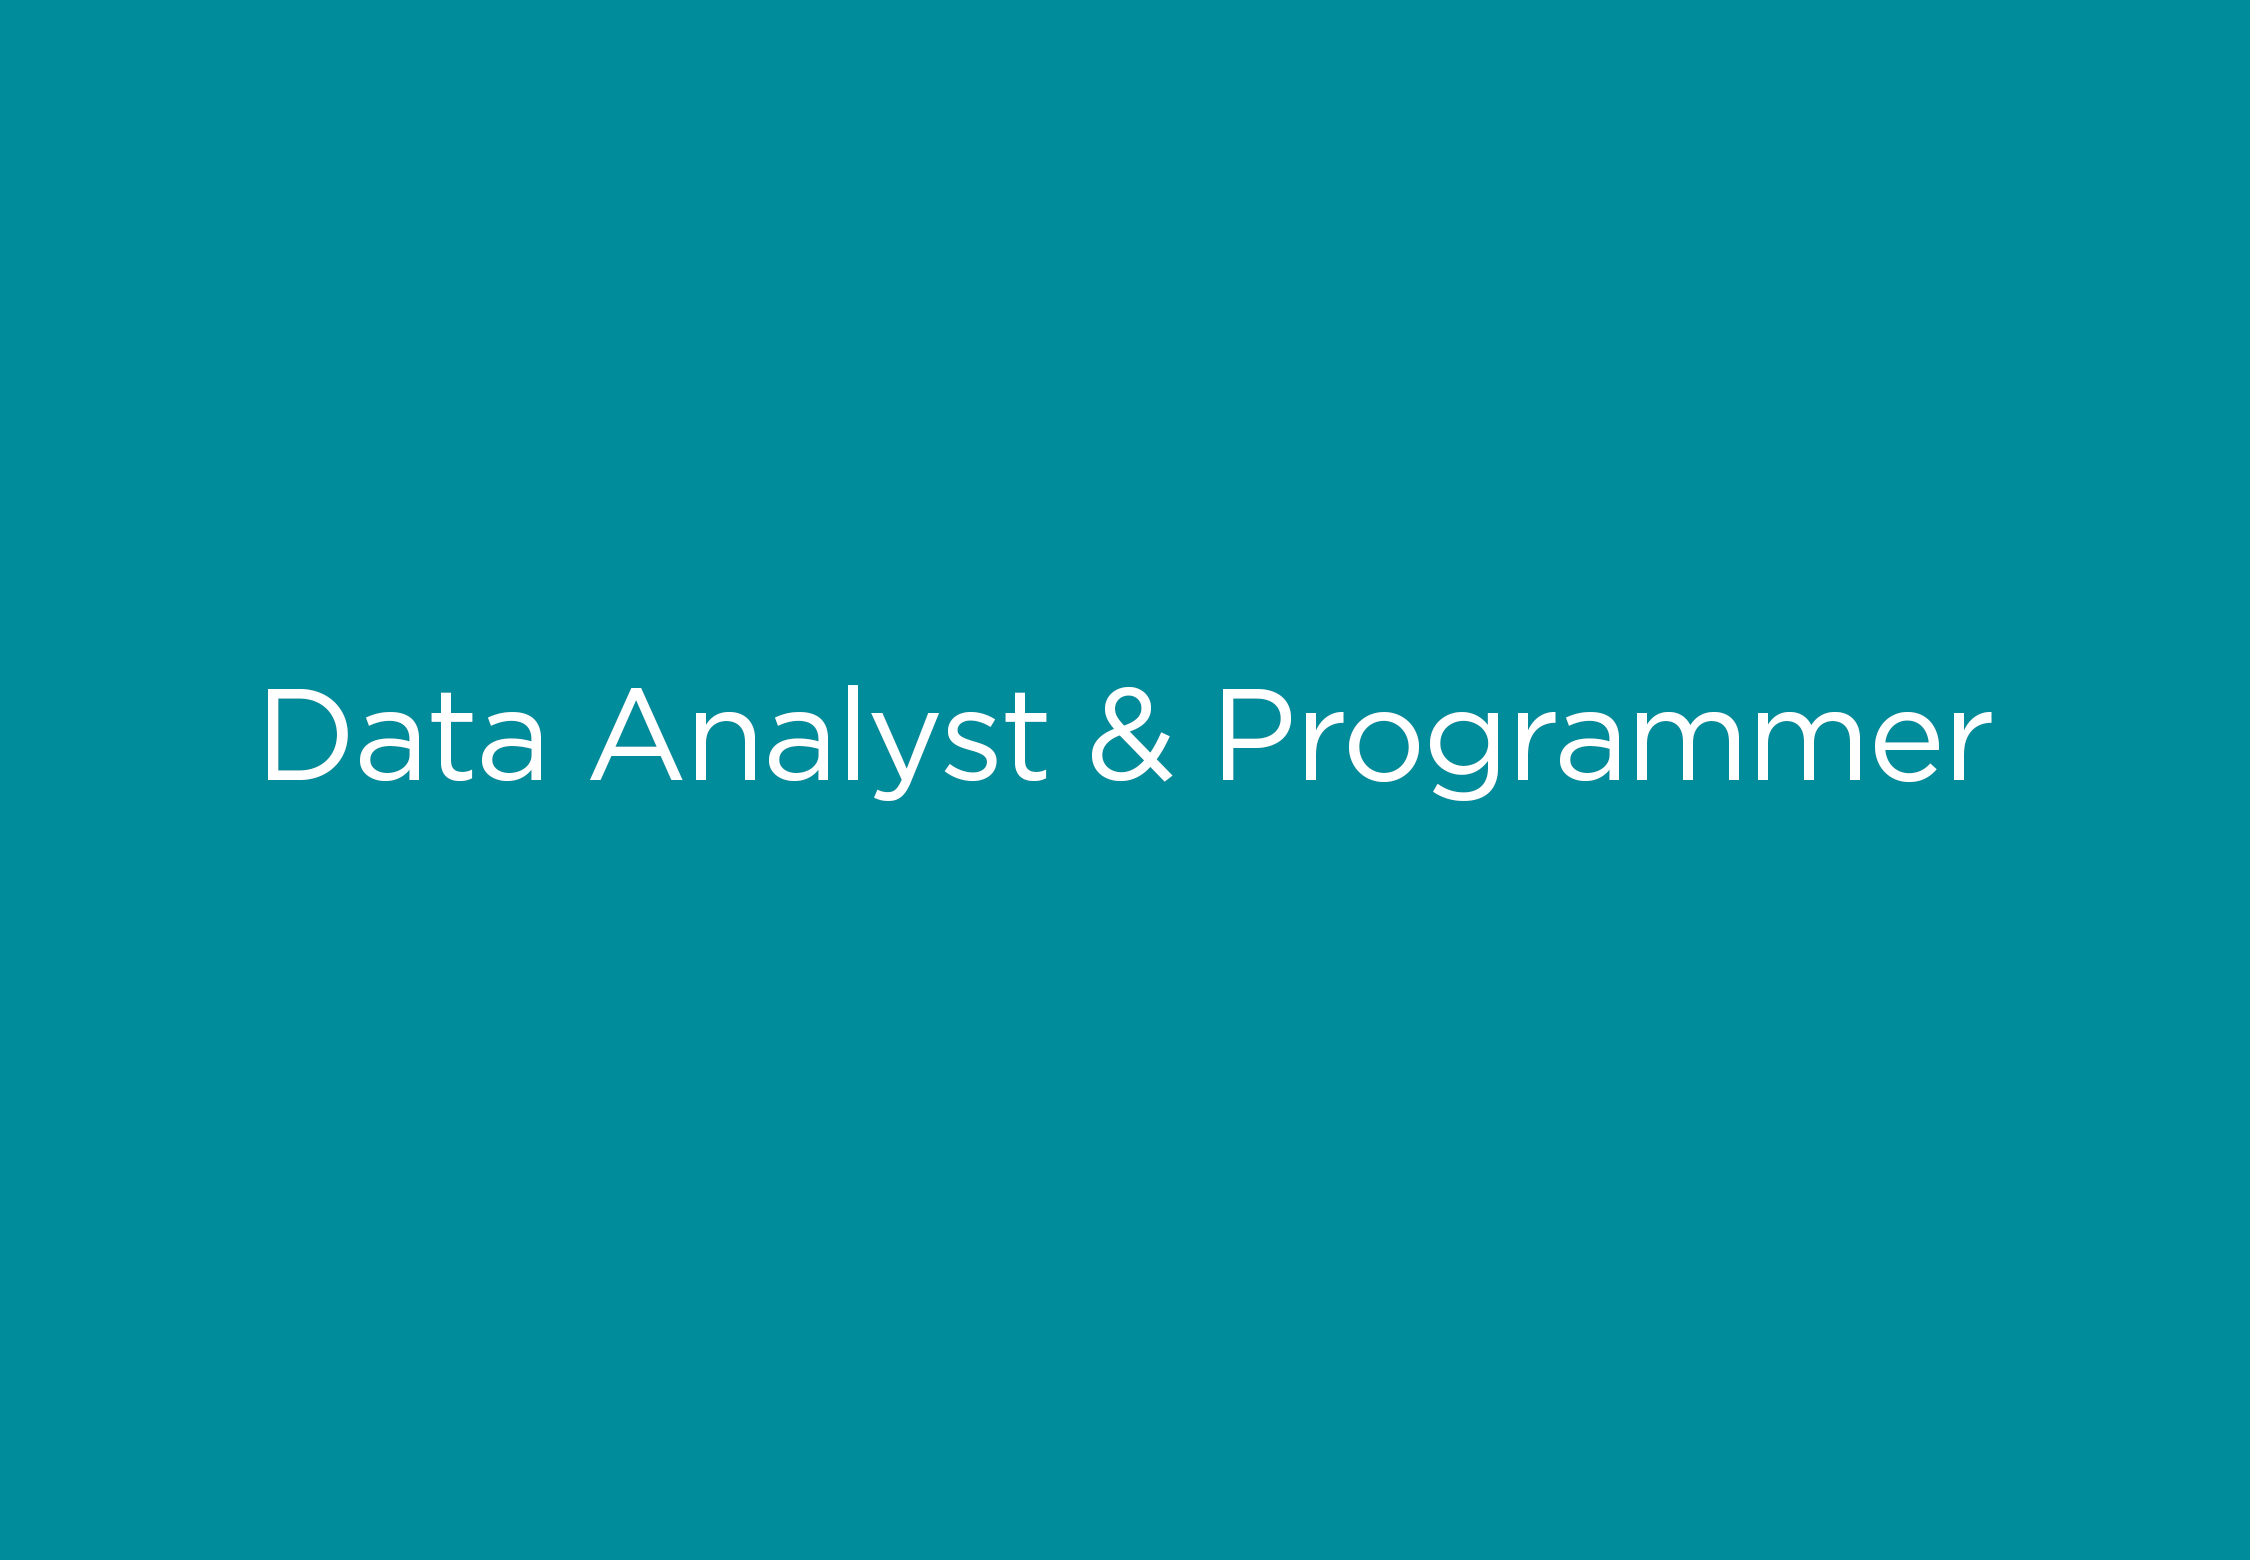 Data Analyst & Programmer